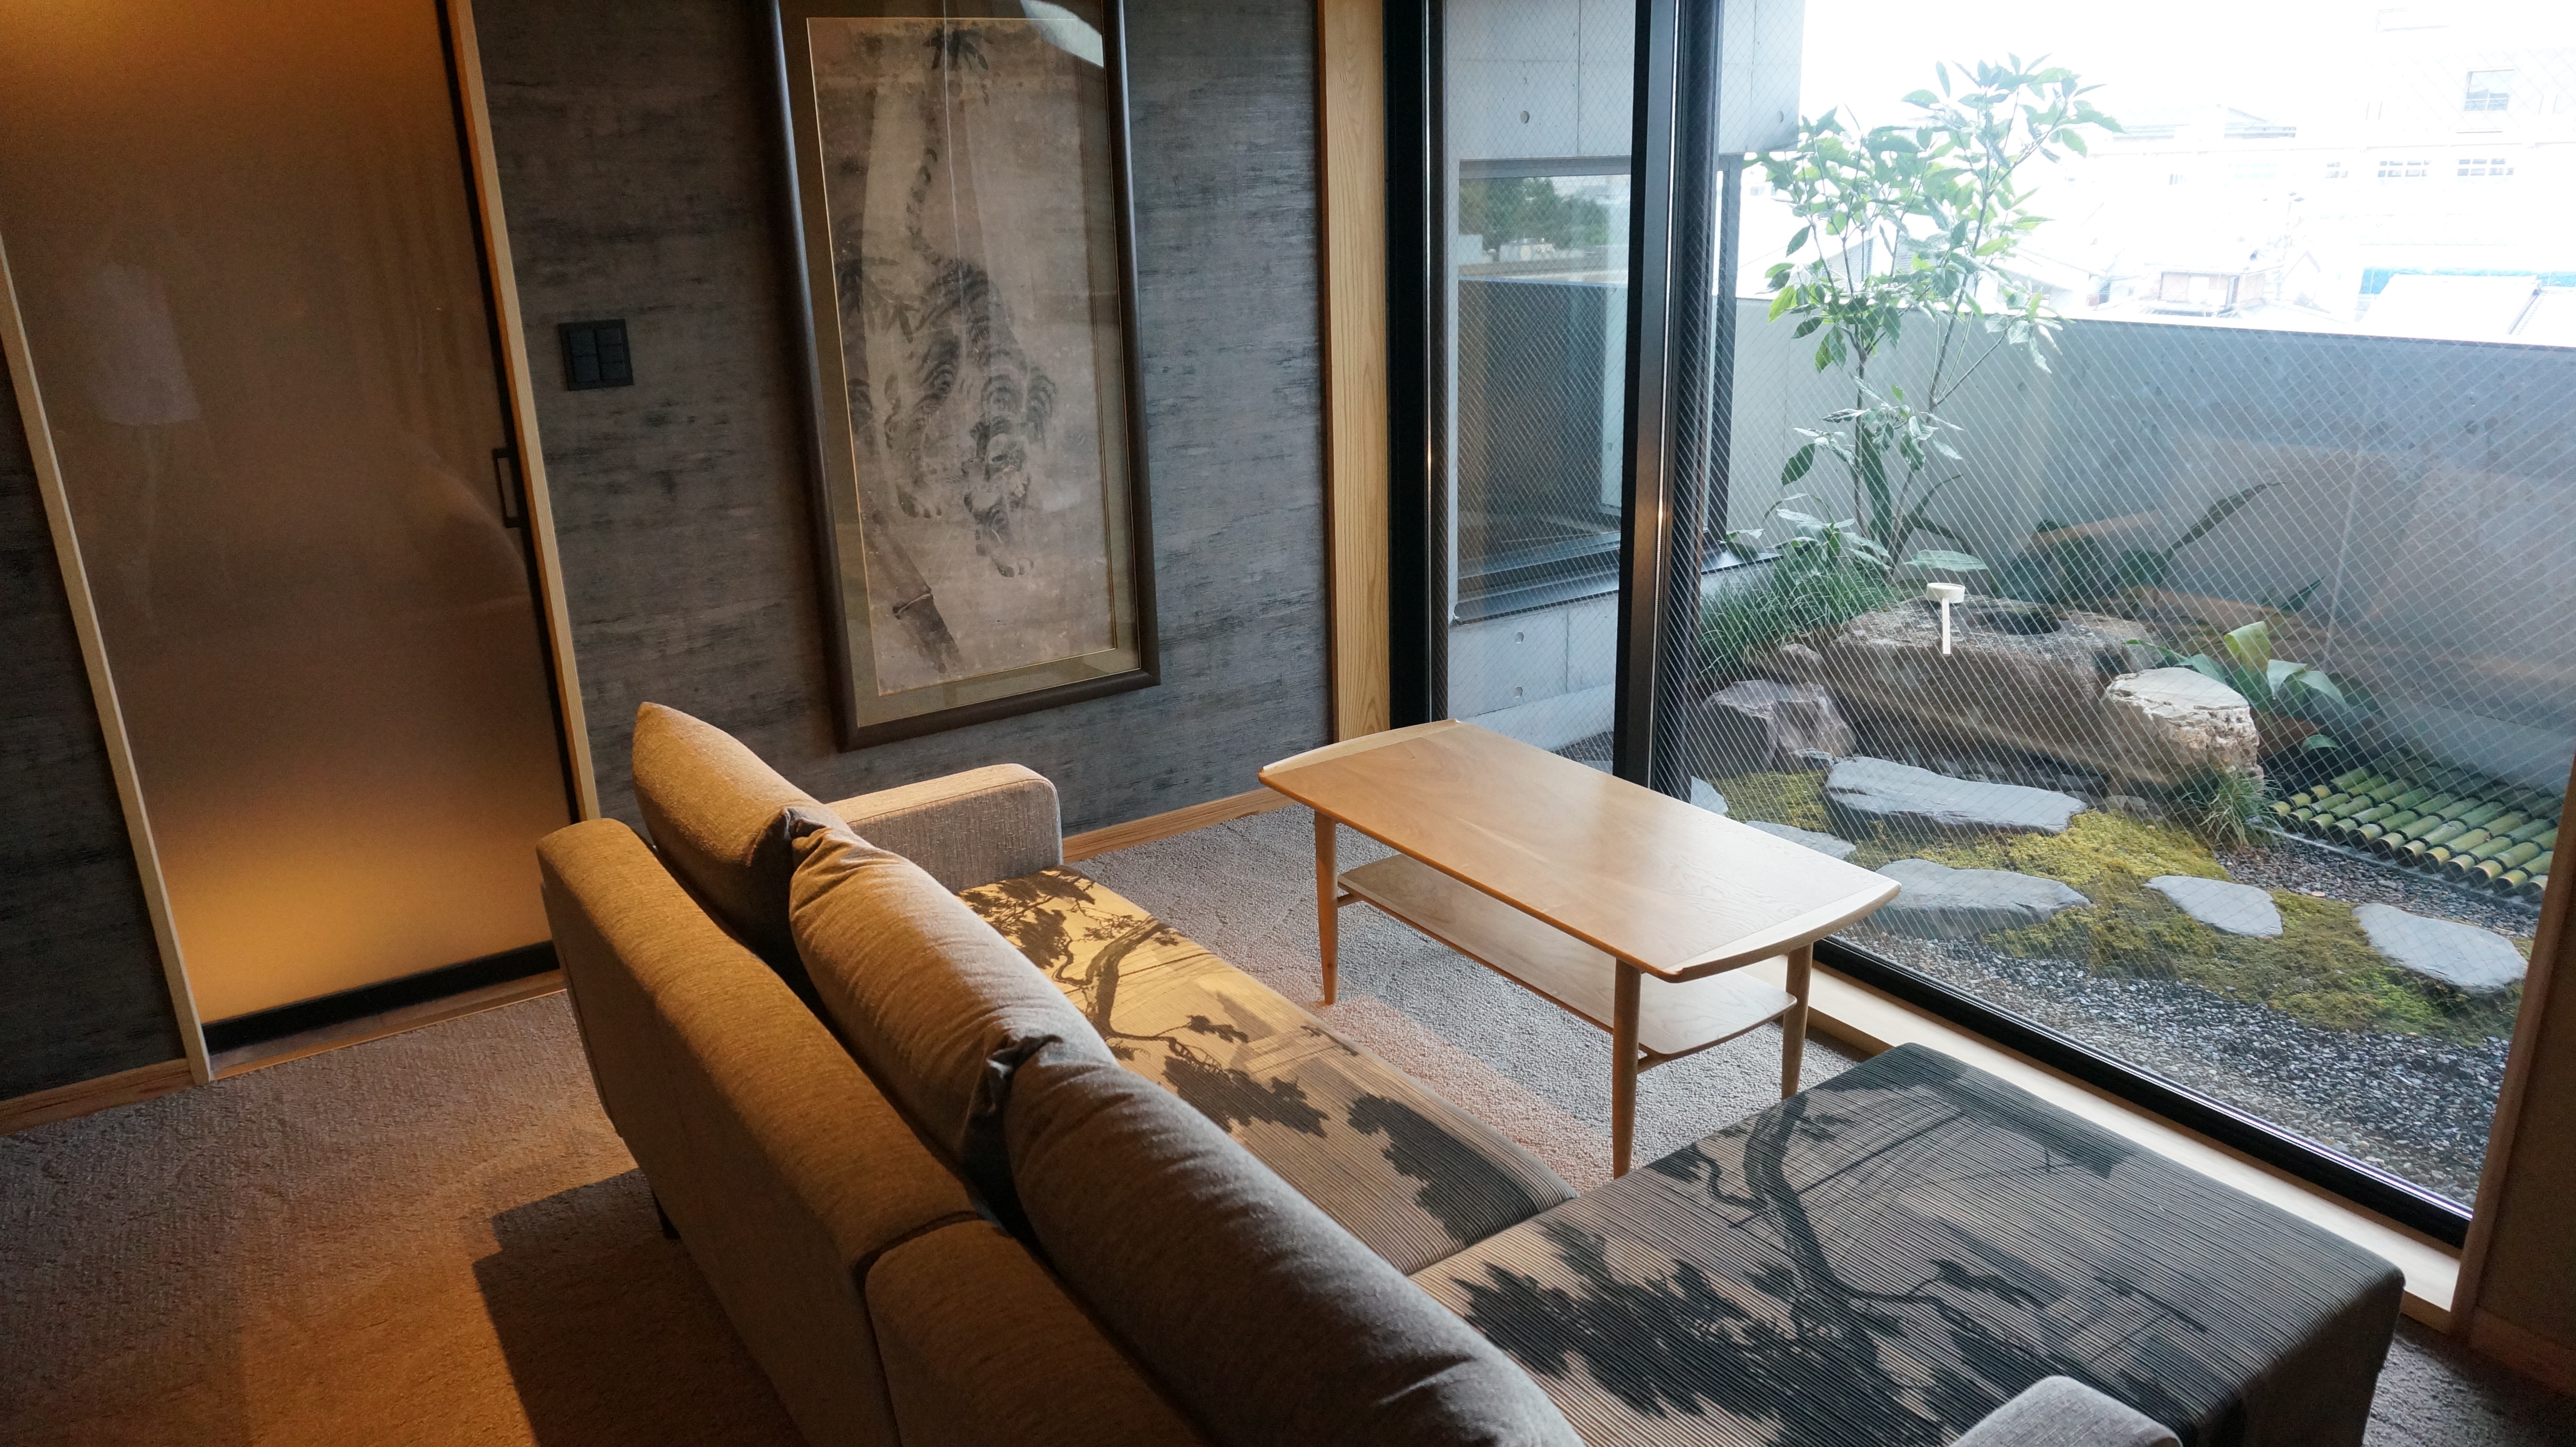 Room 501: Garden ball Armani sofa and Japanese garden